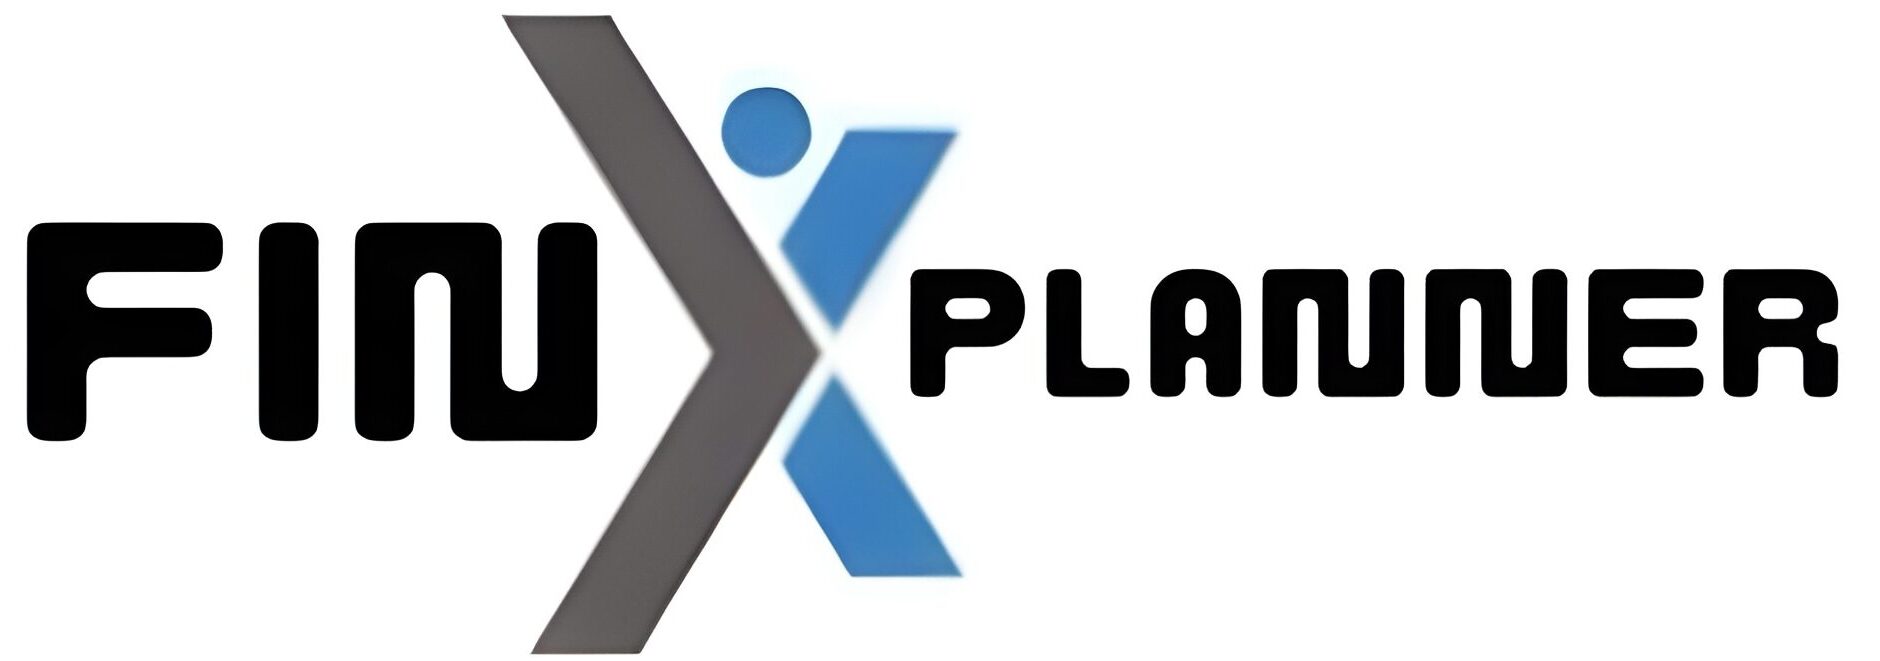 FinXplanner – ให้บริการวางแผนการเงิน